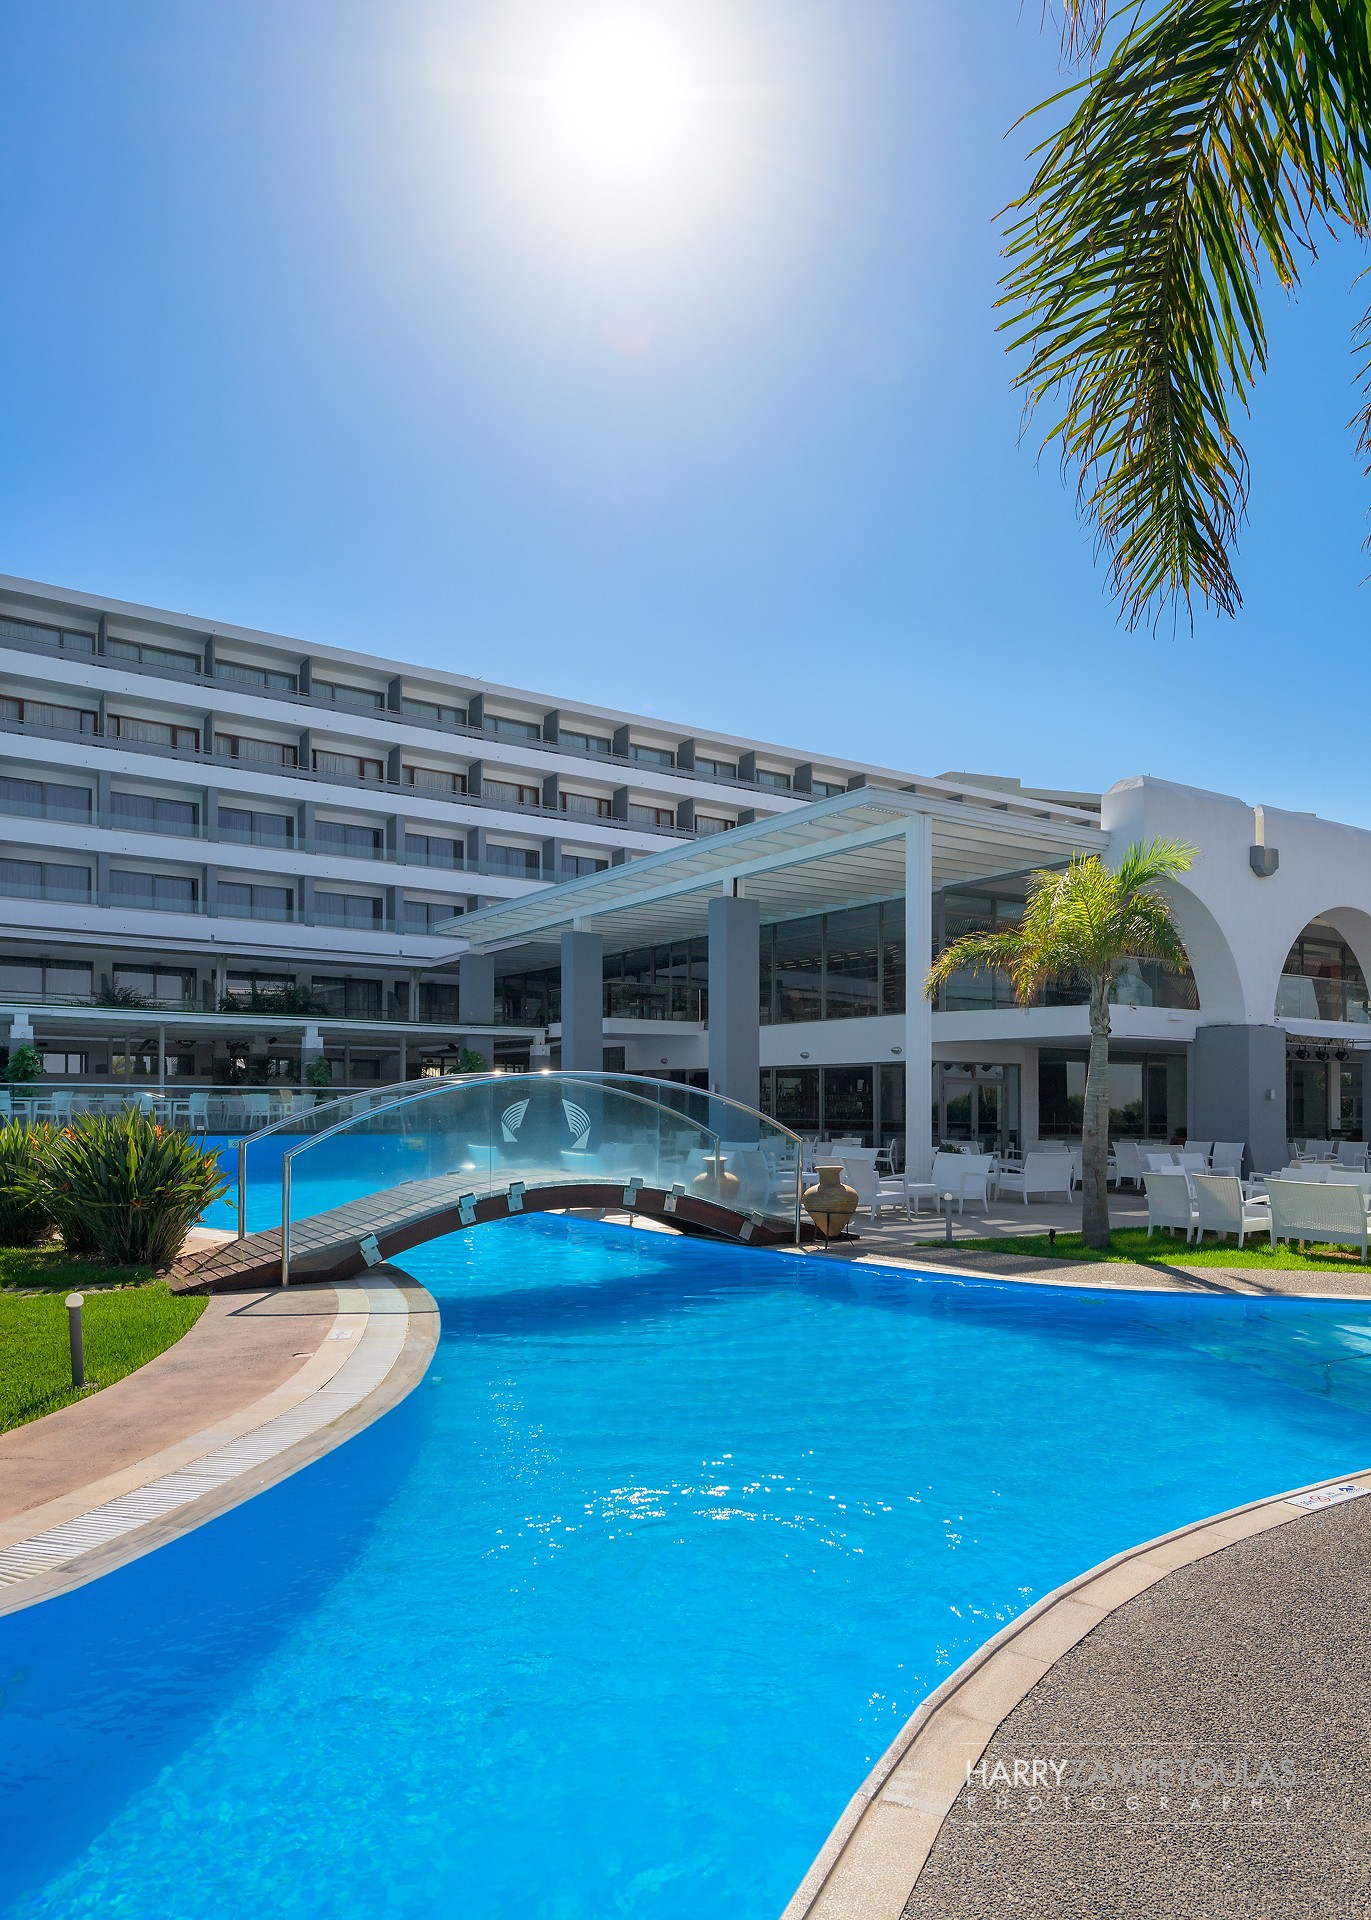 Oceanis-Hotel-Rhodes-Harry-Zampetoulas-Photography-25 Oceanis Hotel Rhodes - Φωτογράφιση Ξενοδοχείου Χάρης Ζαμπετούλας 